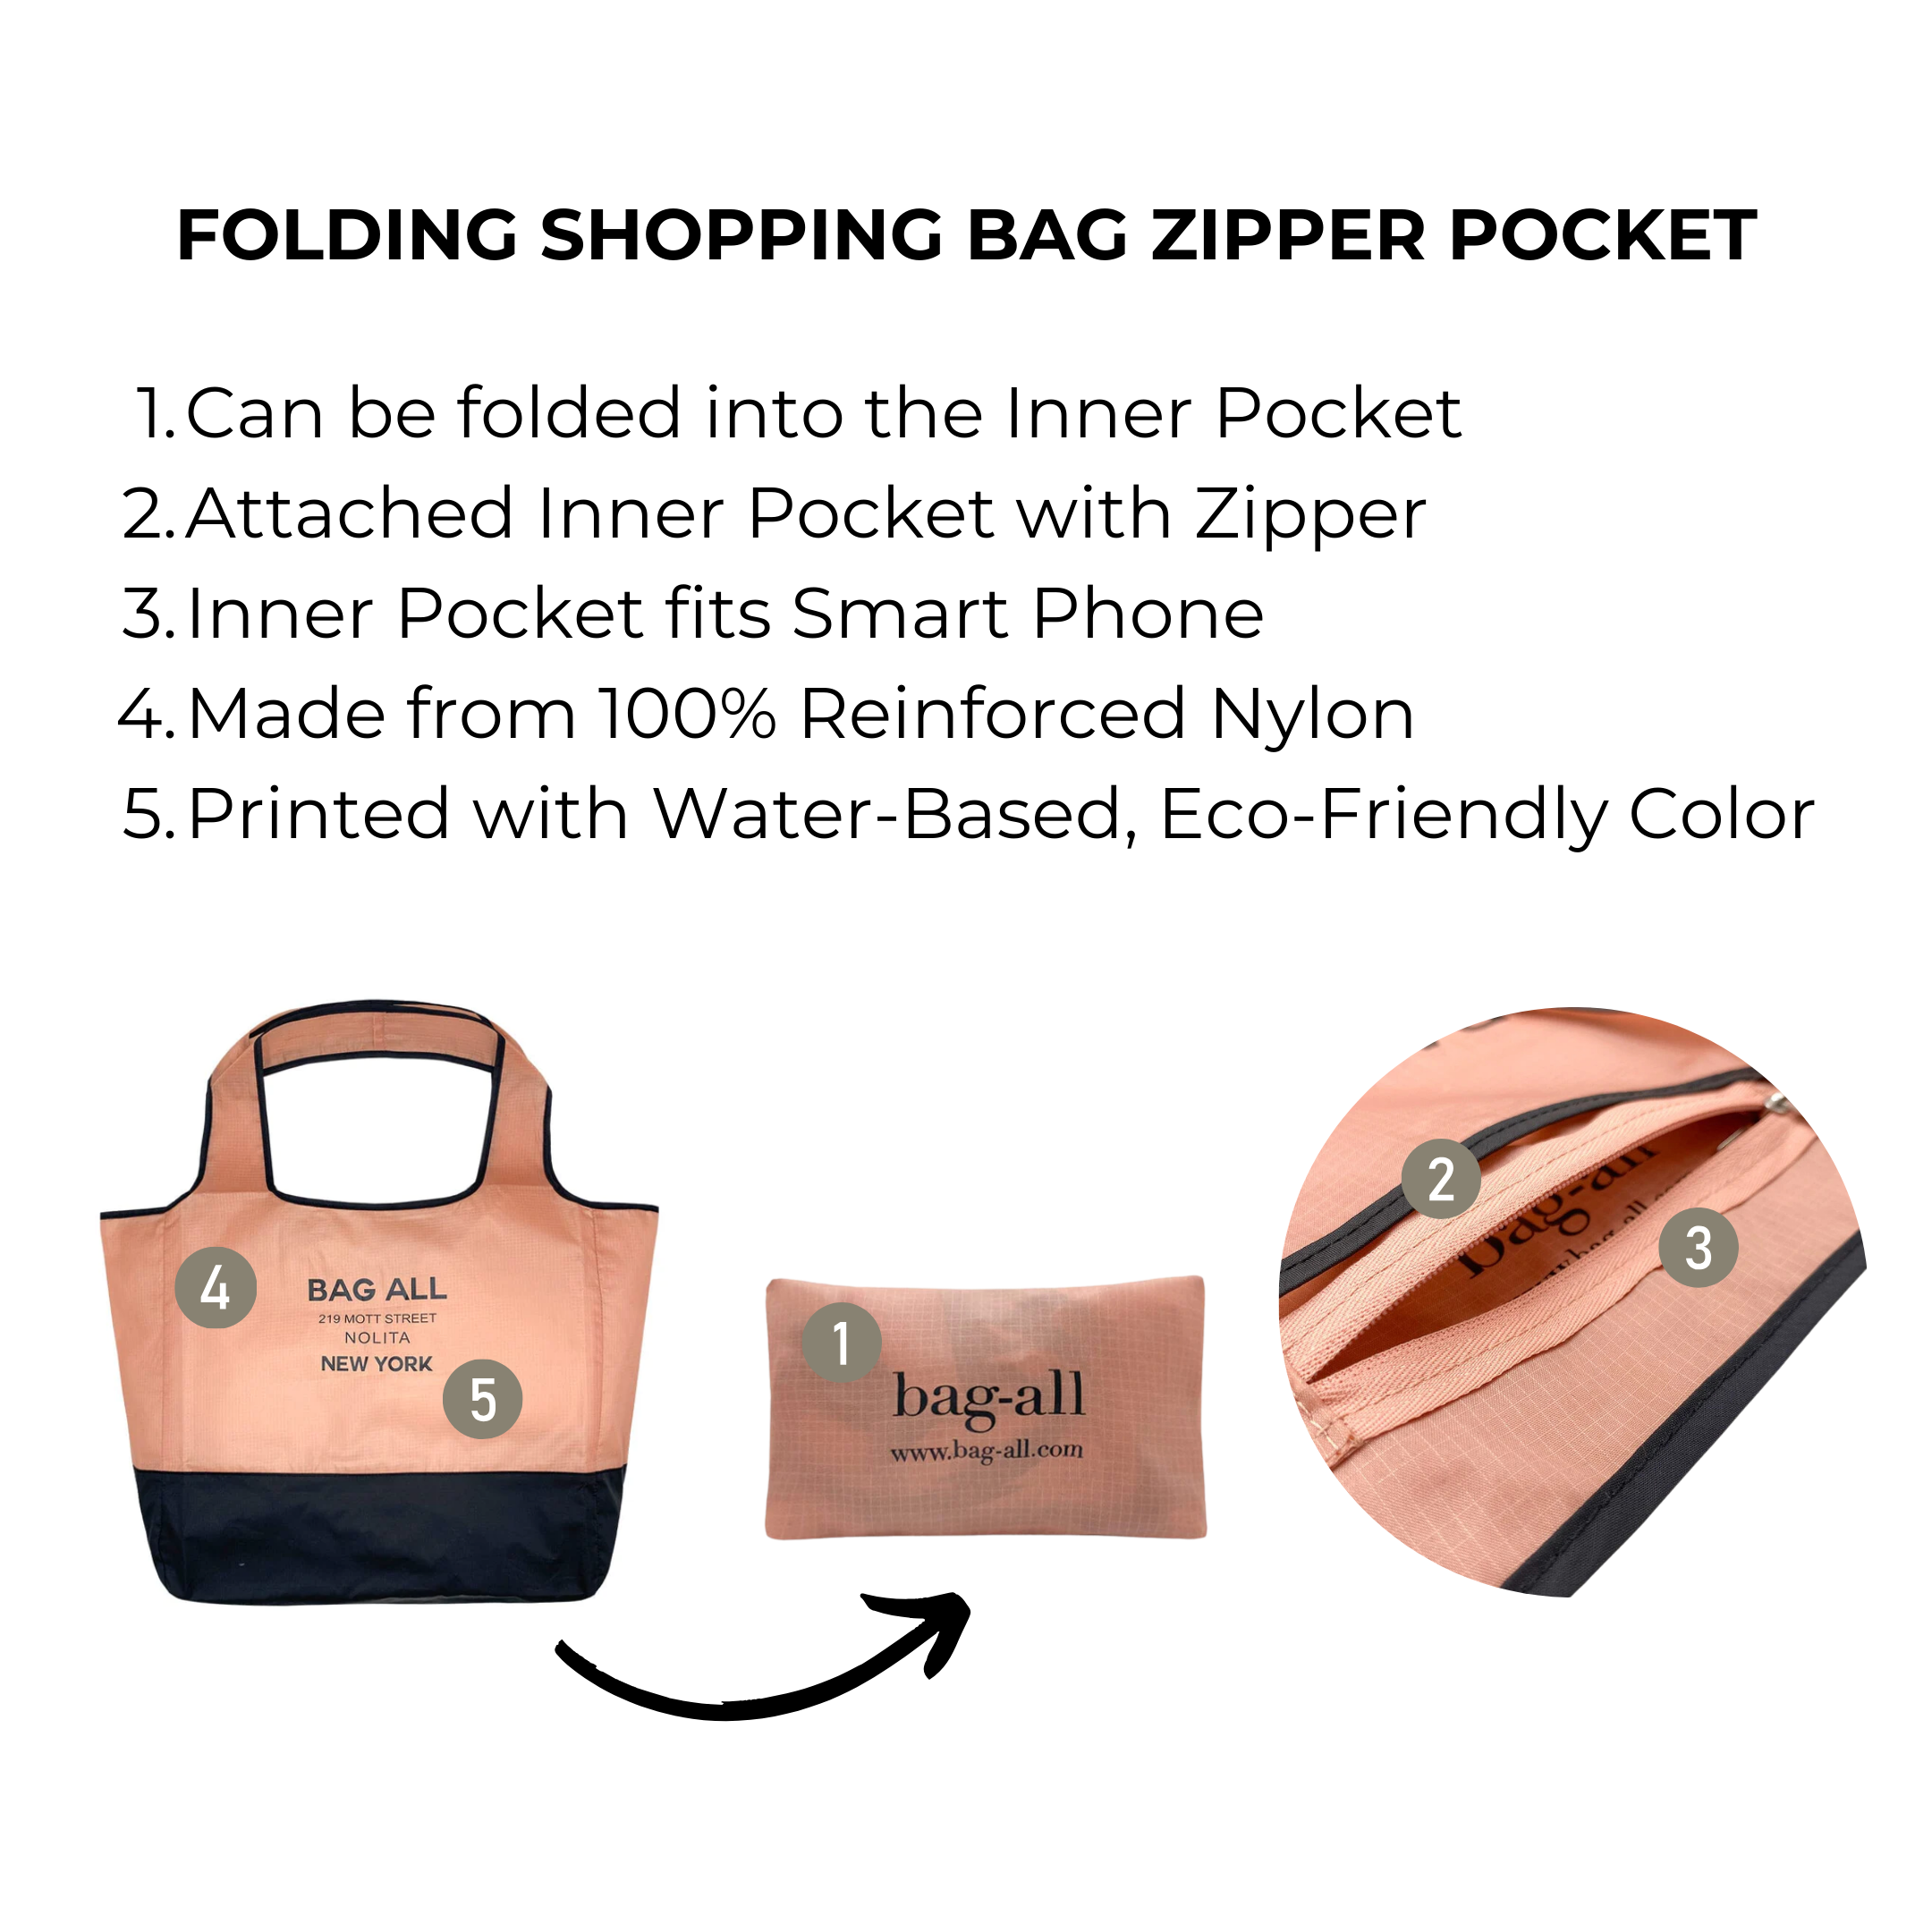 Folding Shopping Bag, Zipper Pocket Pouch | Bag-all